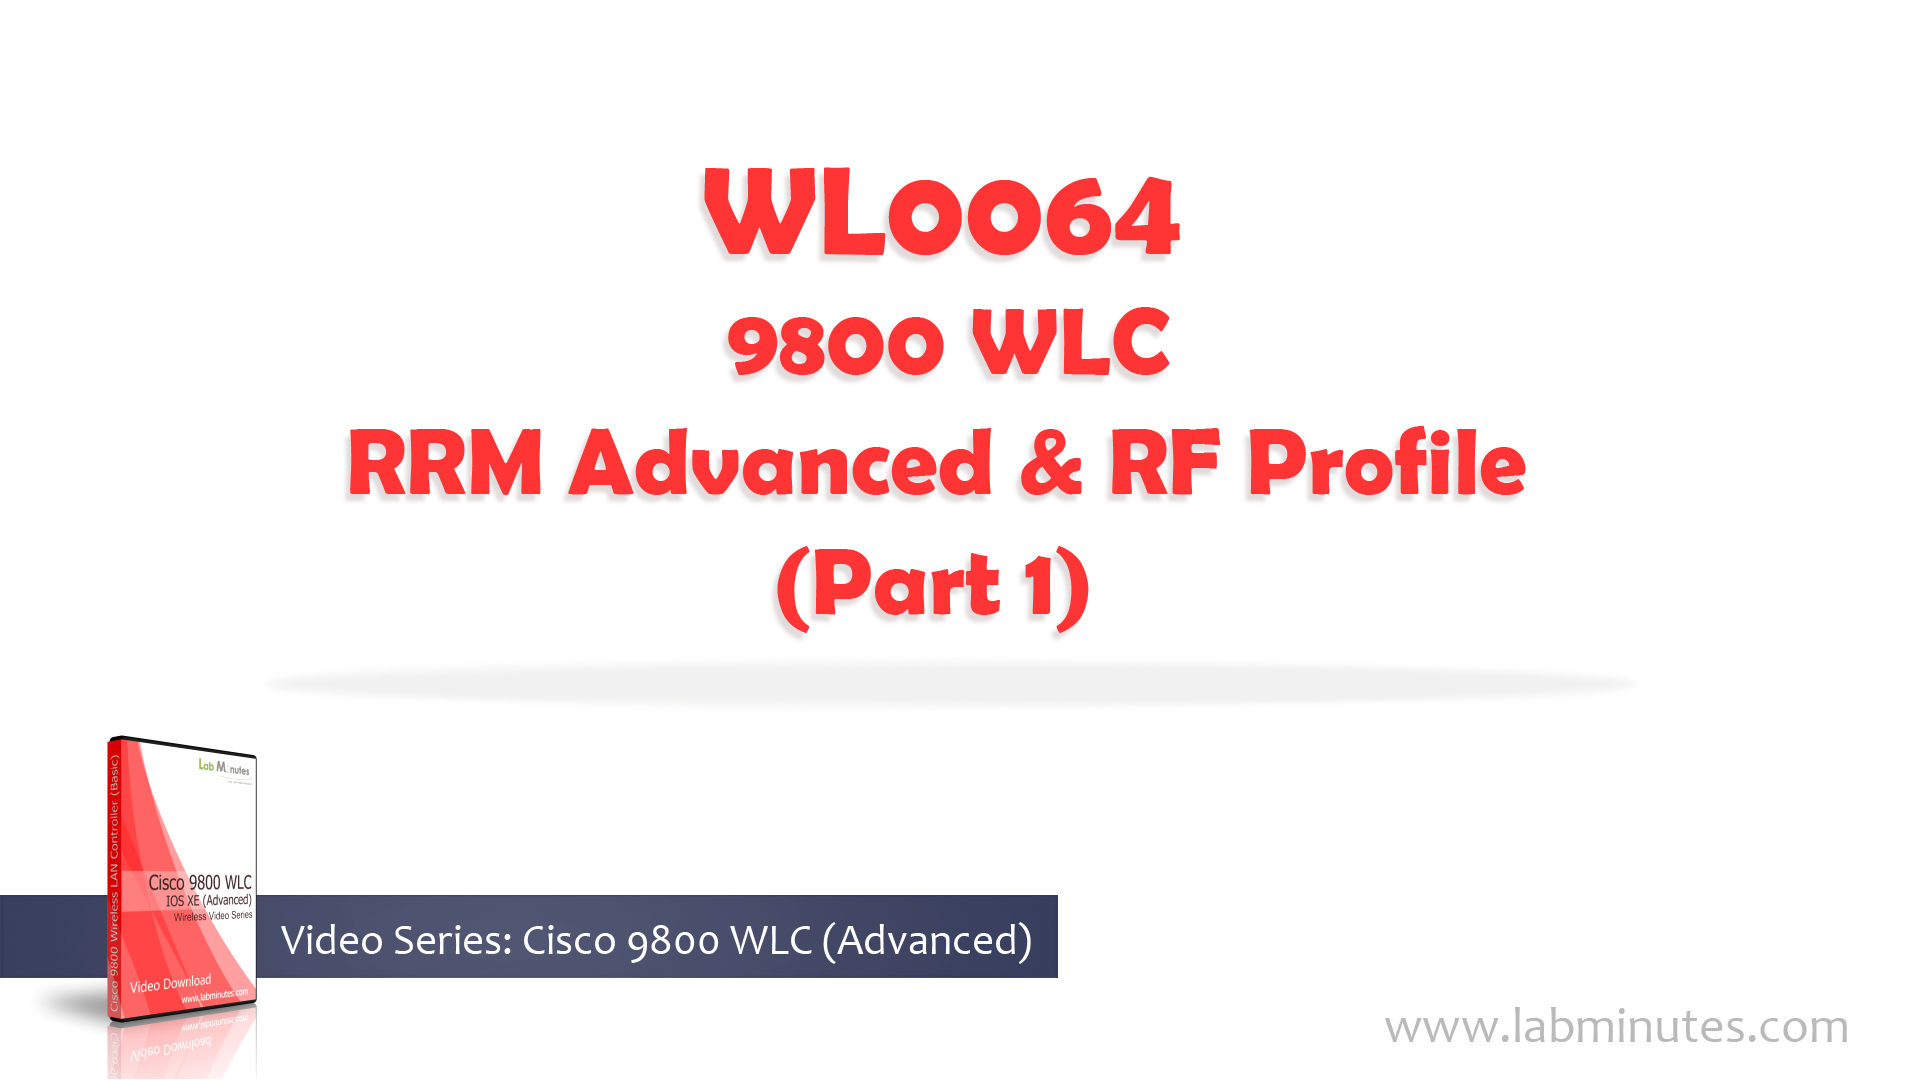 WL0064-1.jpg